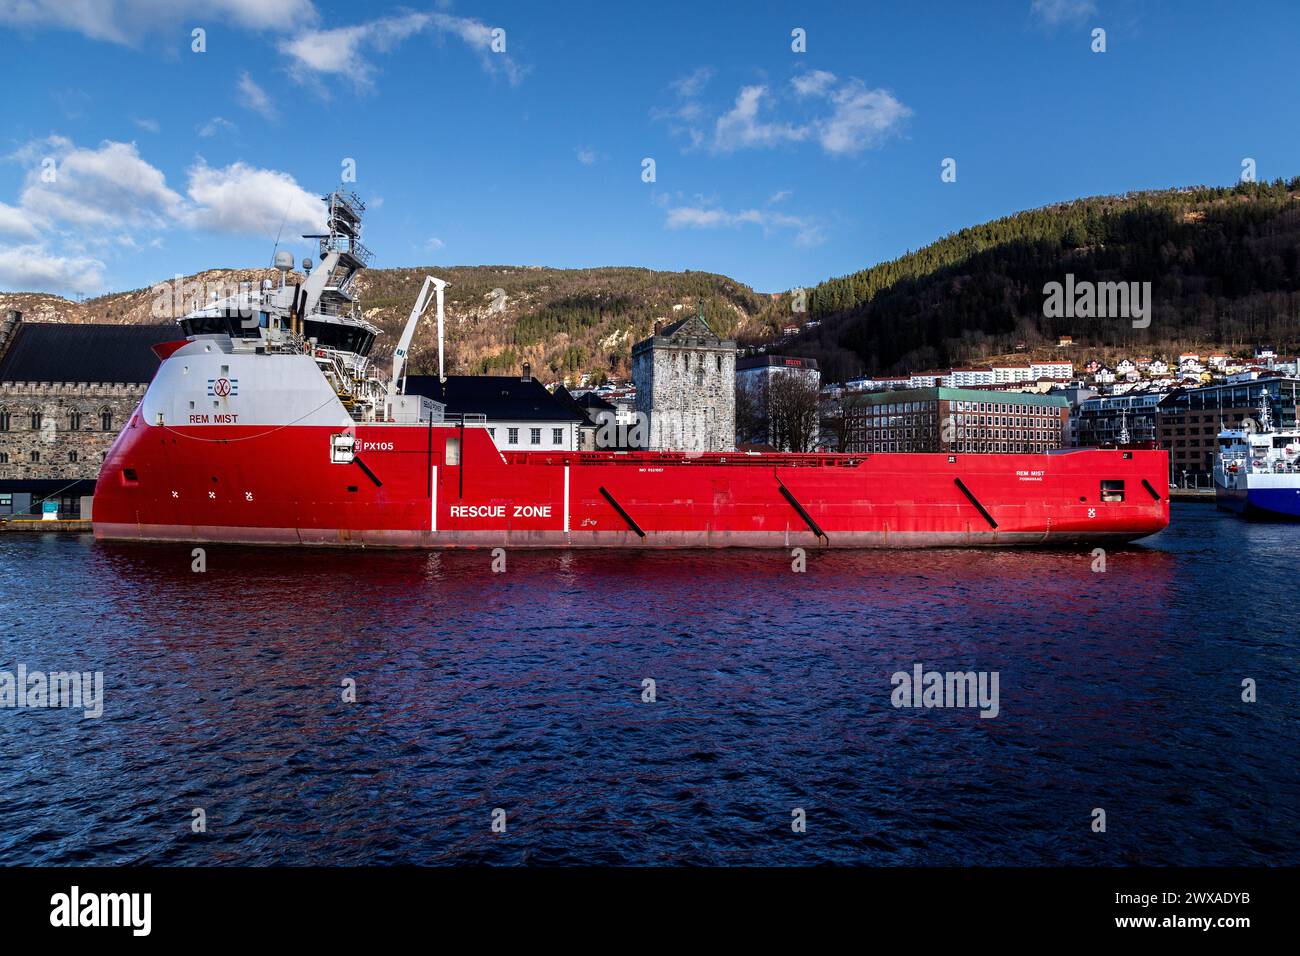 PSV-Offshore-Plattform-Versorgungsschiff Rem Mist legte in Festningskaien im Hafen von Bergen, Norwegen, an. Haakonshallen, Bergenhus und Rosenkrantzturm Stockfoto